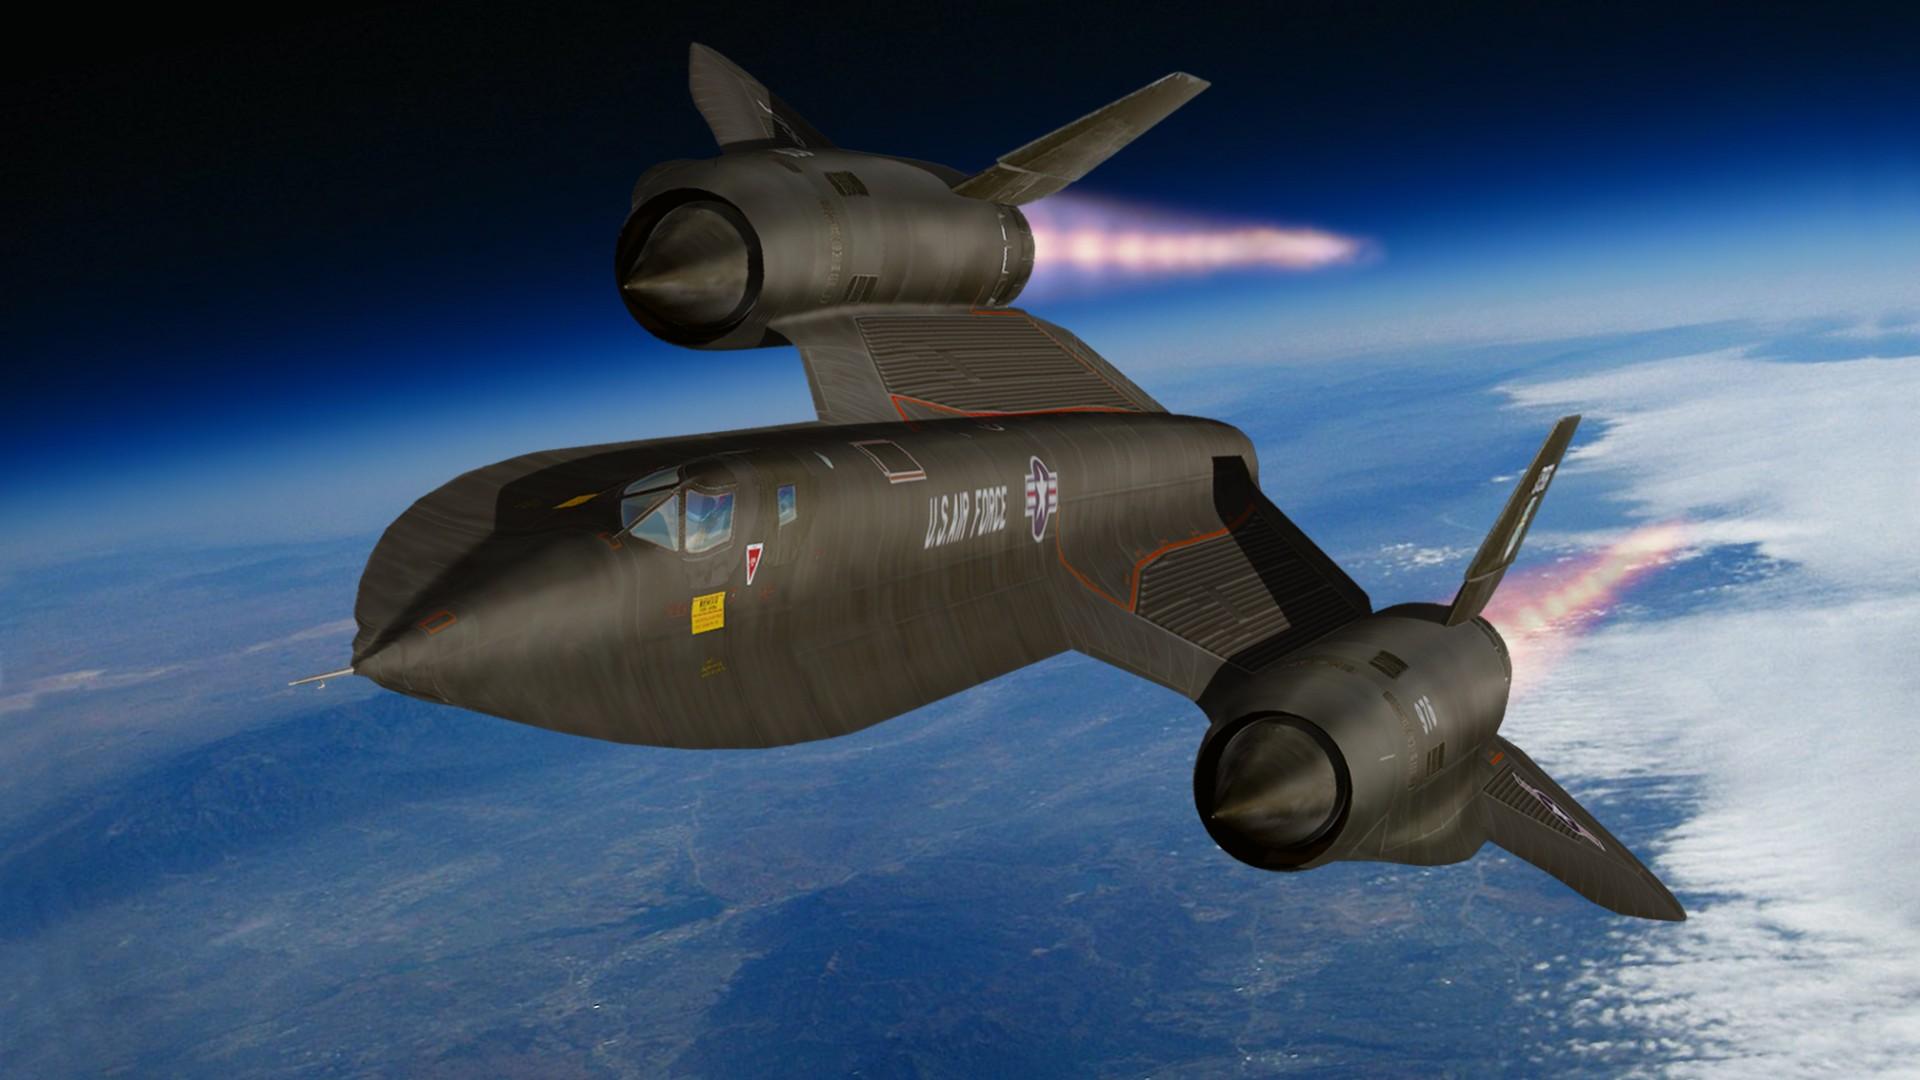 洛克希德sr72侦察机6倍音速飞行速度比导弹都快